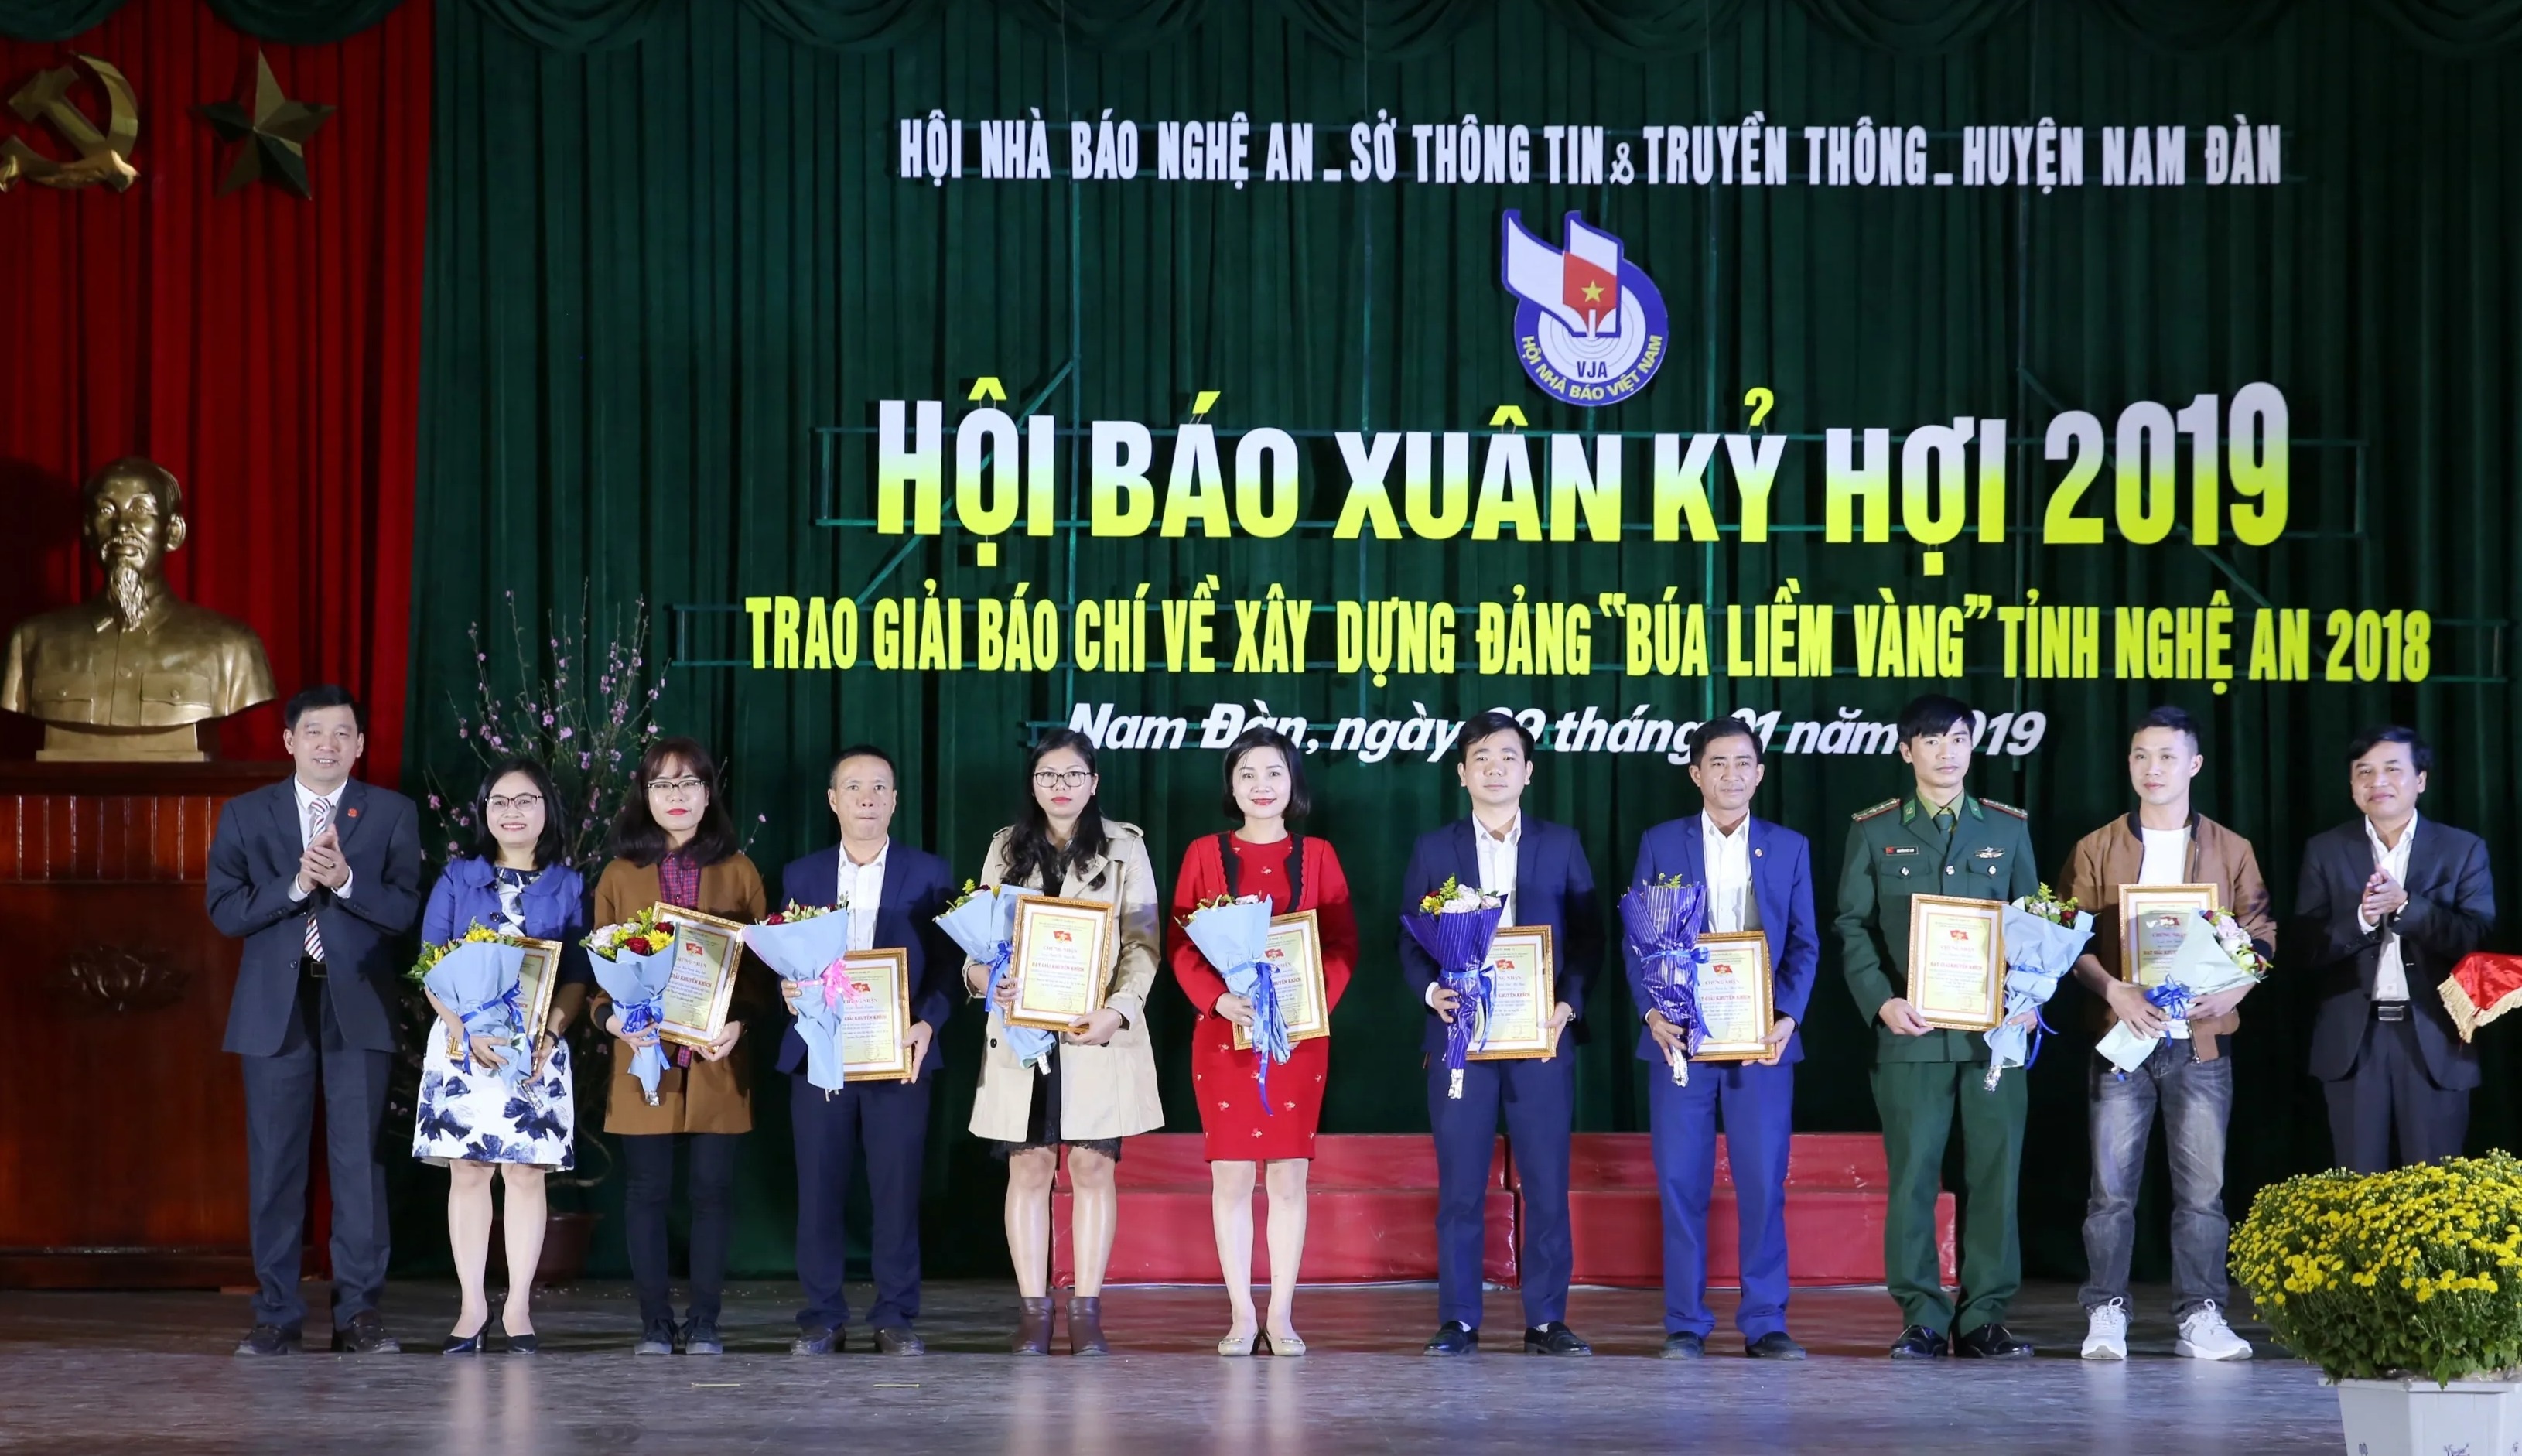 Khai mạc Hội báo Xuân, trao giải “Búa liềm vàng” tỉnh Nghệ An